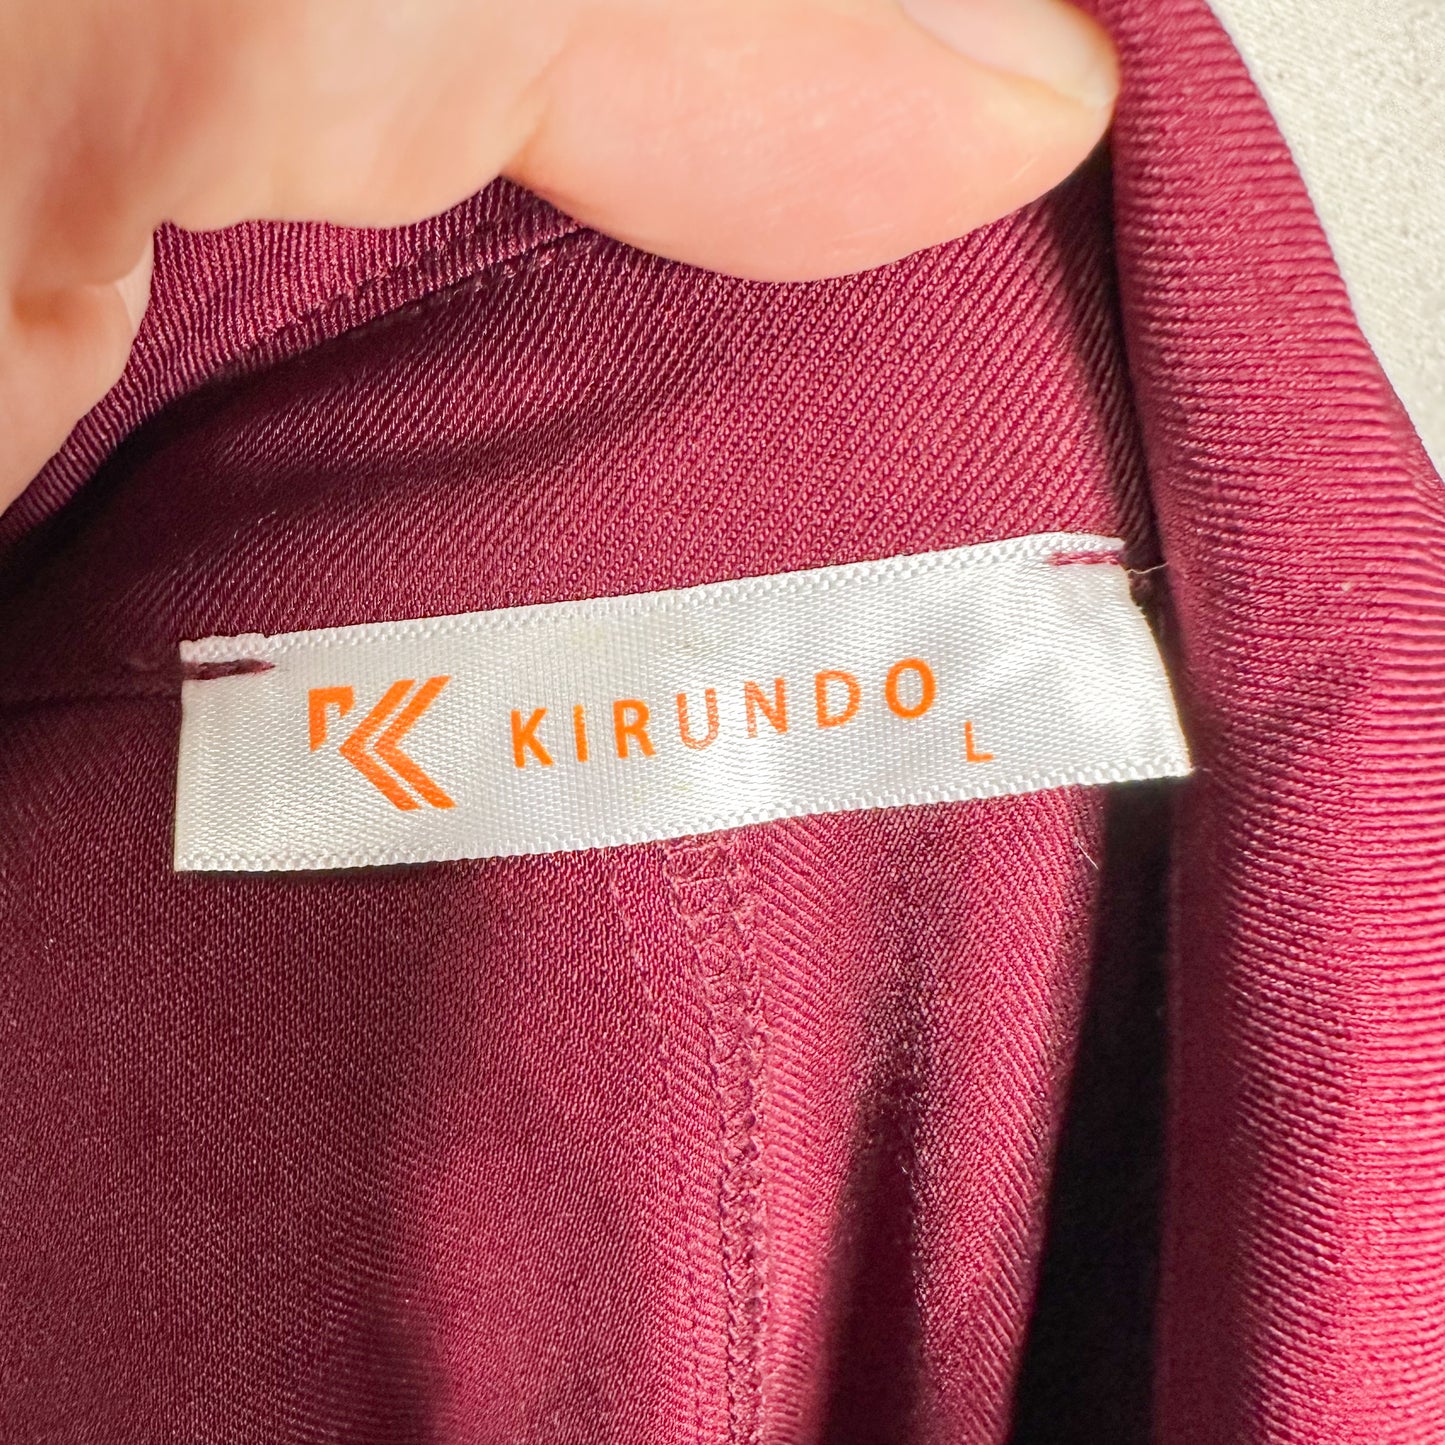 Kirundo Wine Red Trench Coat Size Large